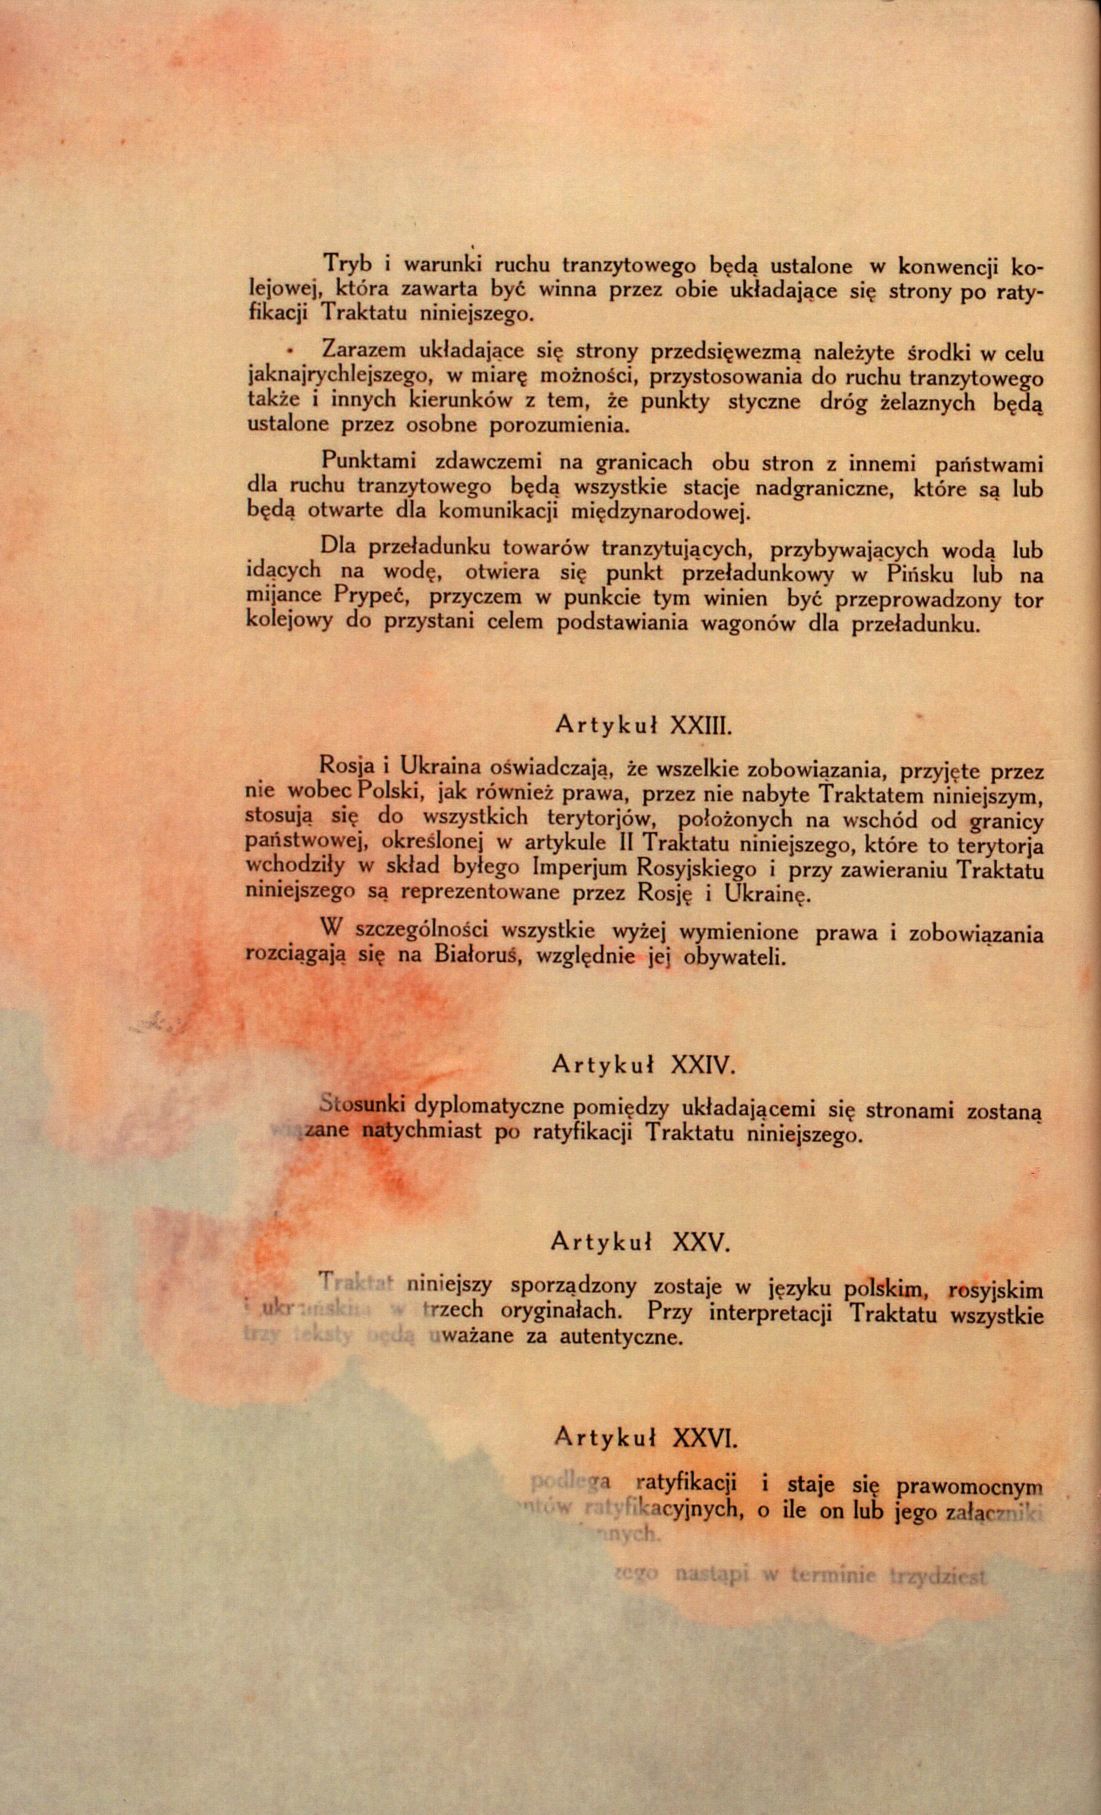 Traktat Pokoju między Polską a Rosją i Ukrainą podpisany w Rydze dnia 18 marca 1921 roku, s. 22, MSZ, sygn. 6739.